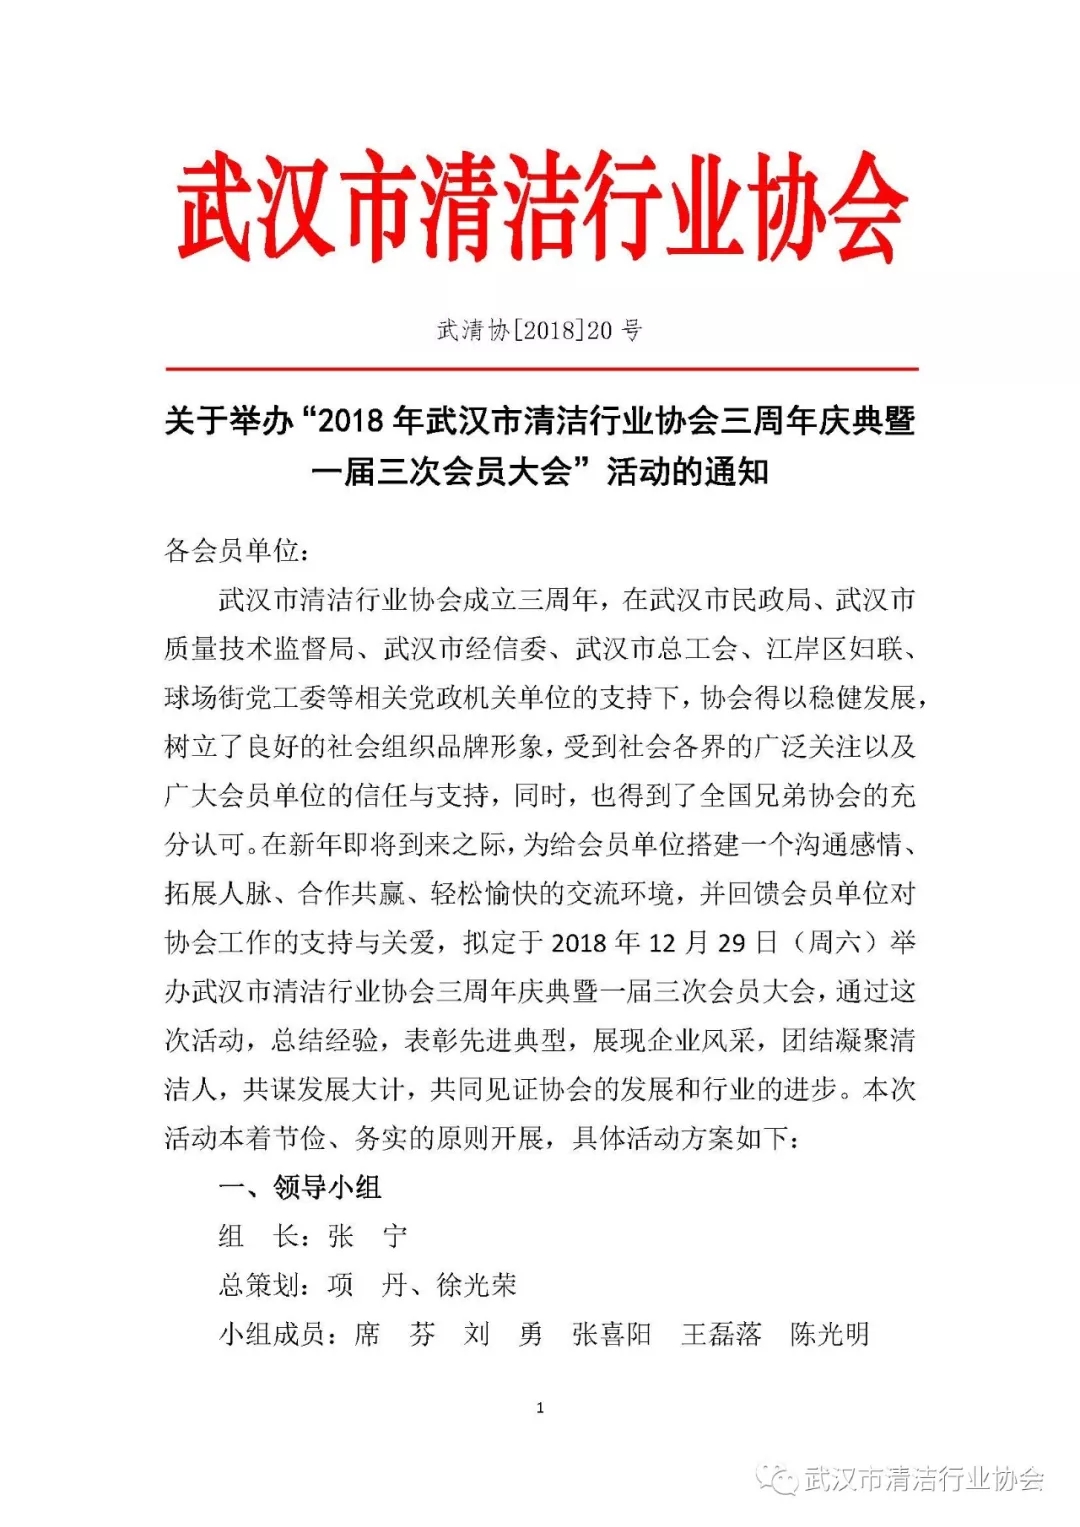 【活动通知】关于举办“2018年武汉市清洁行业协会三周年庆典暨一届三次会员大会”活动的通知